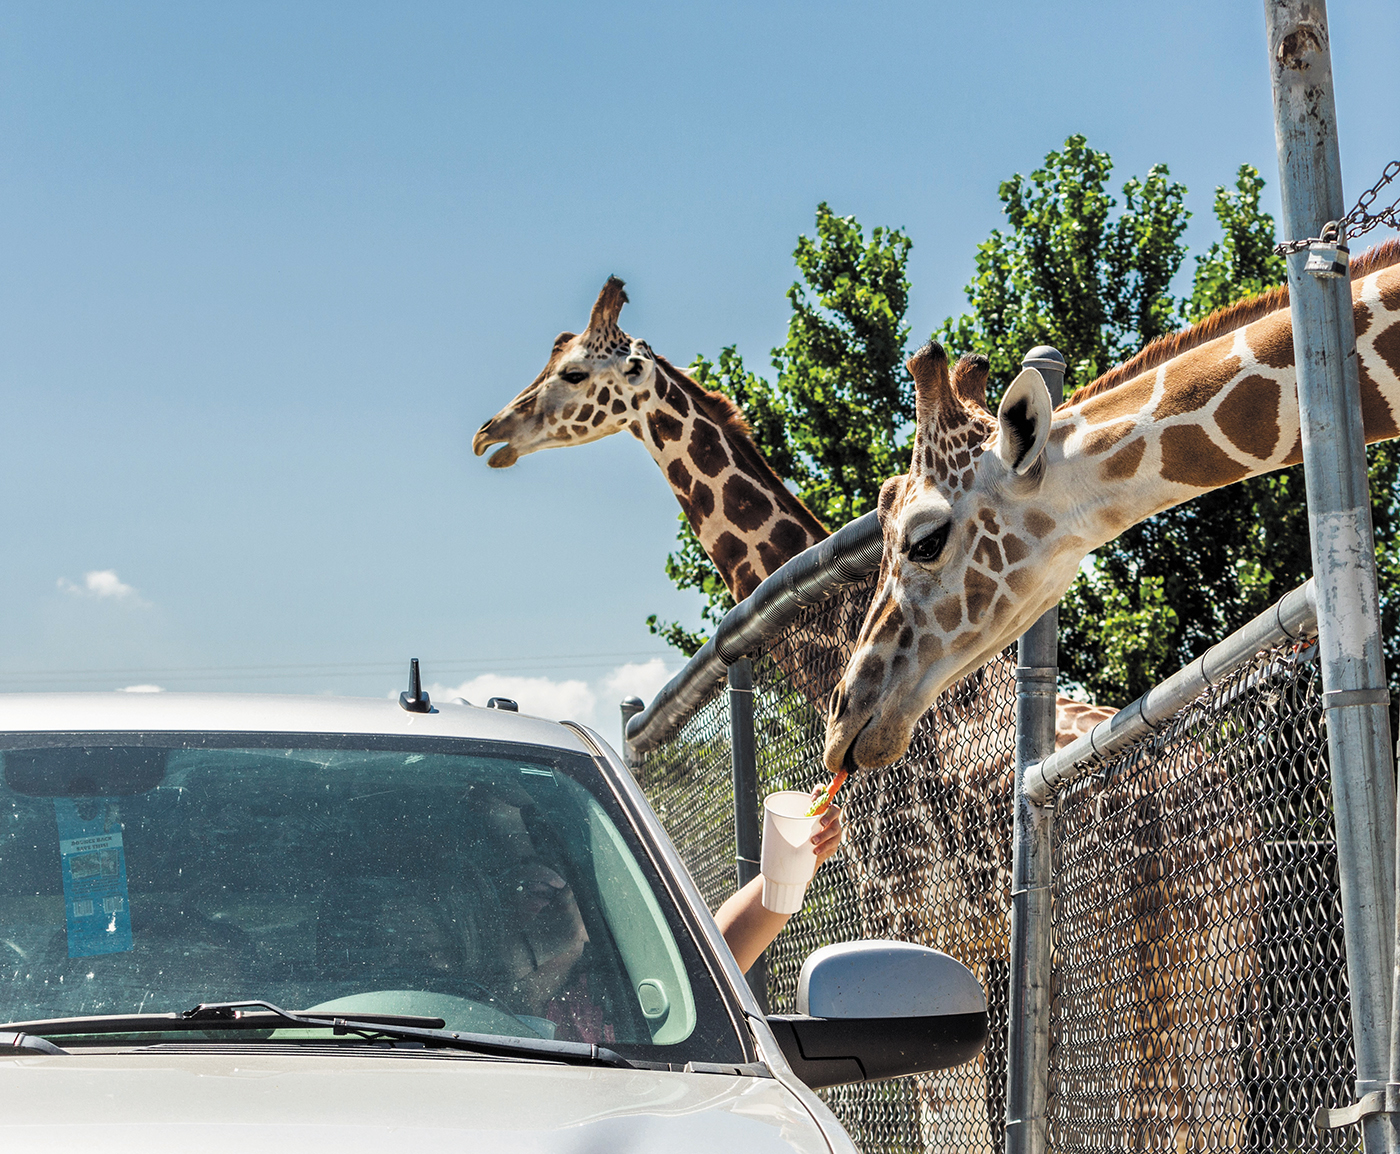 african safari wildlife park car damage